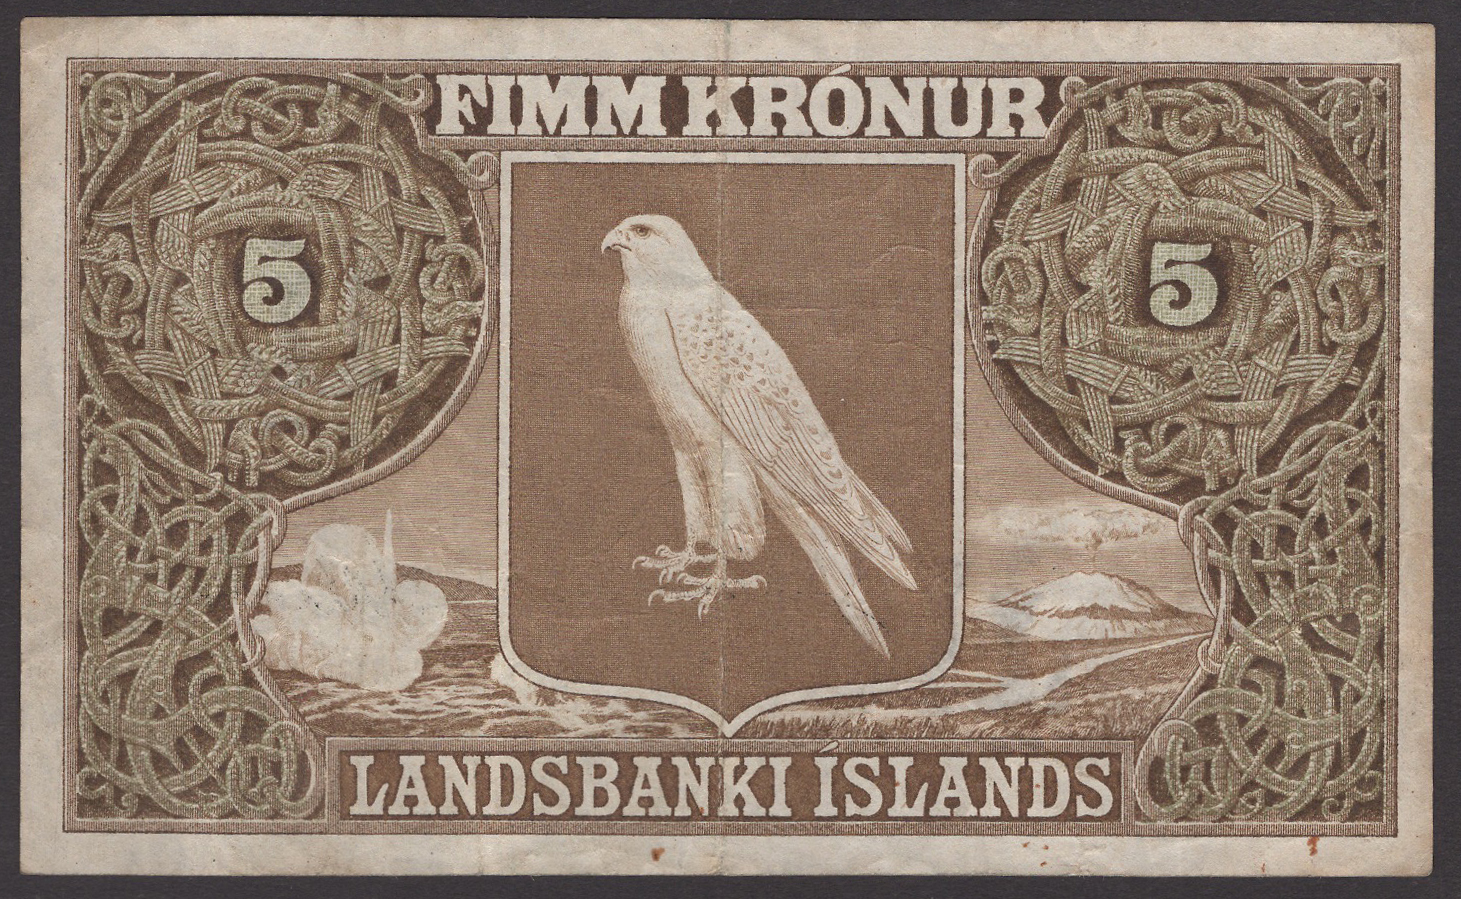 Landsbanki Islands, 5 Kronur, 15 April 1928, serial number 458134, Arnason and Kaaber... - Image 2 of 2